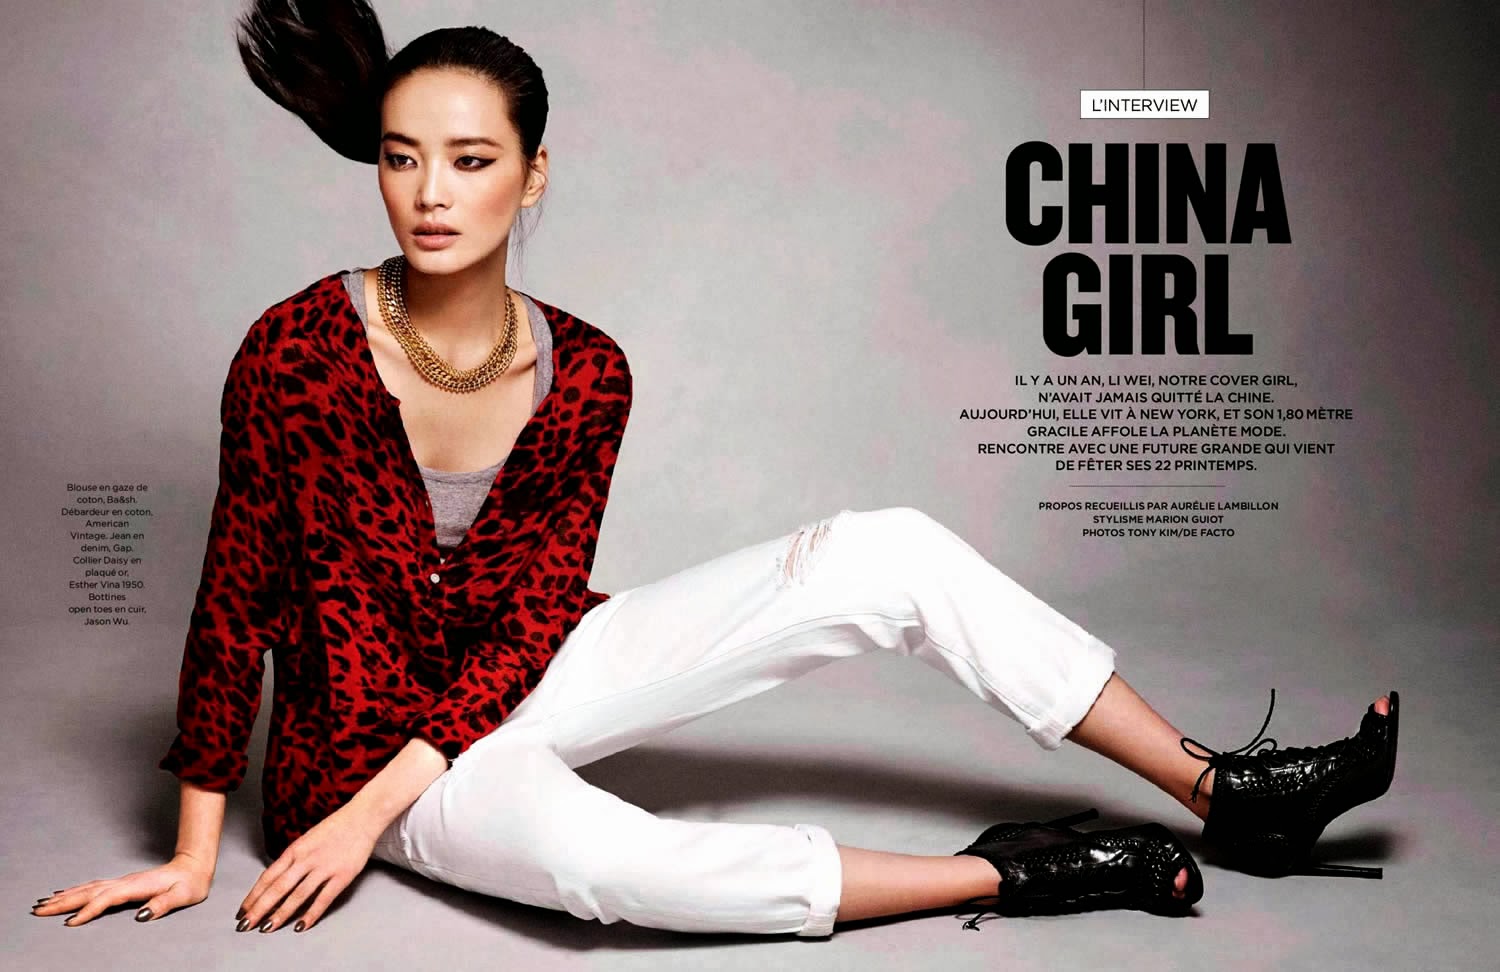 Magazine Photoshoot : Li Wei Photoshoot For Tony Kim Be Magazine February 2014 Issue 